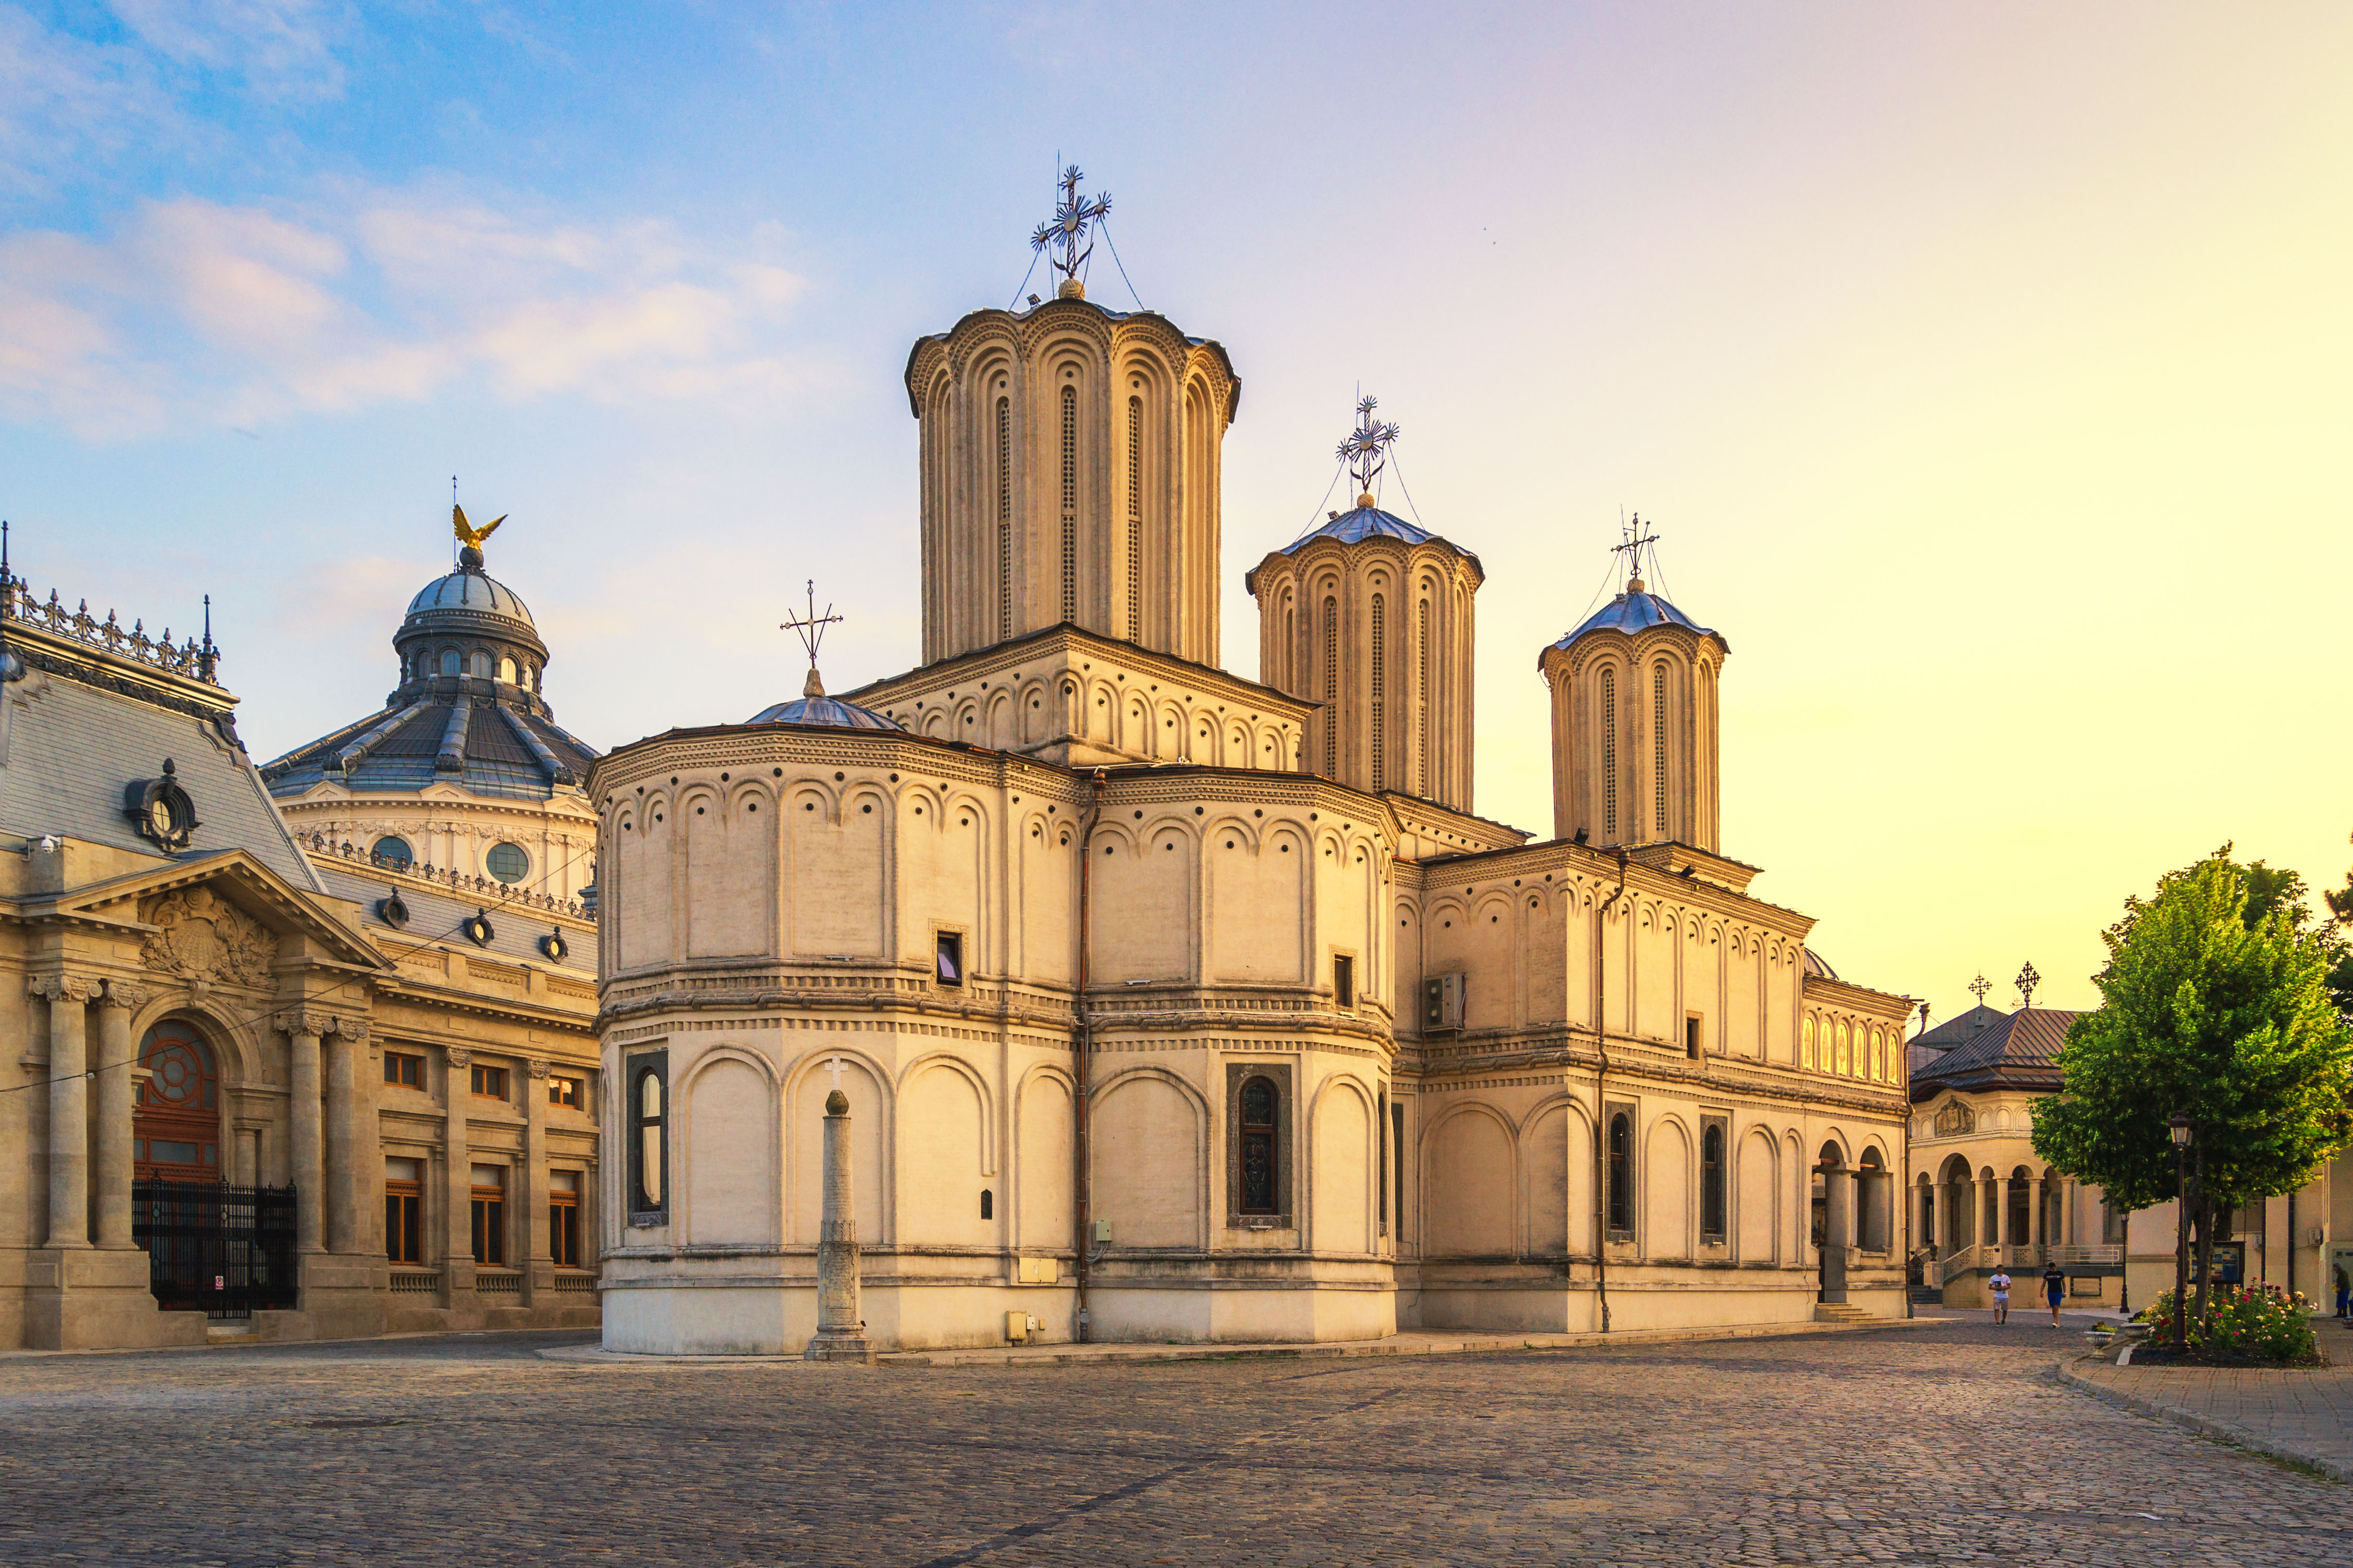 Достопримечательность Бухареста (церковь в Бухаресте) как символ программы репатриации в Румынии и получения гражданства